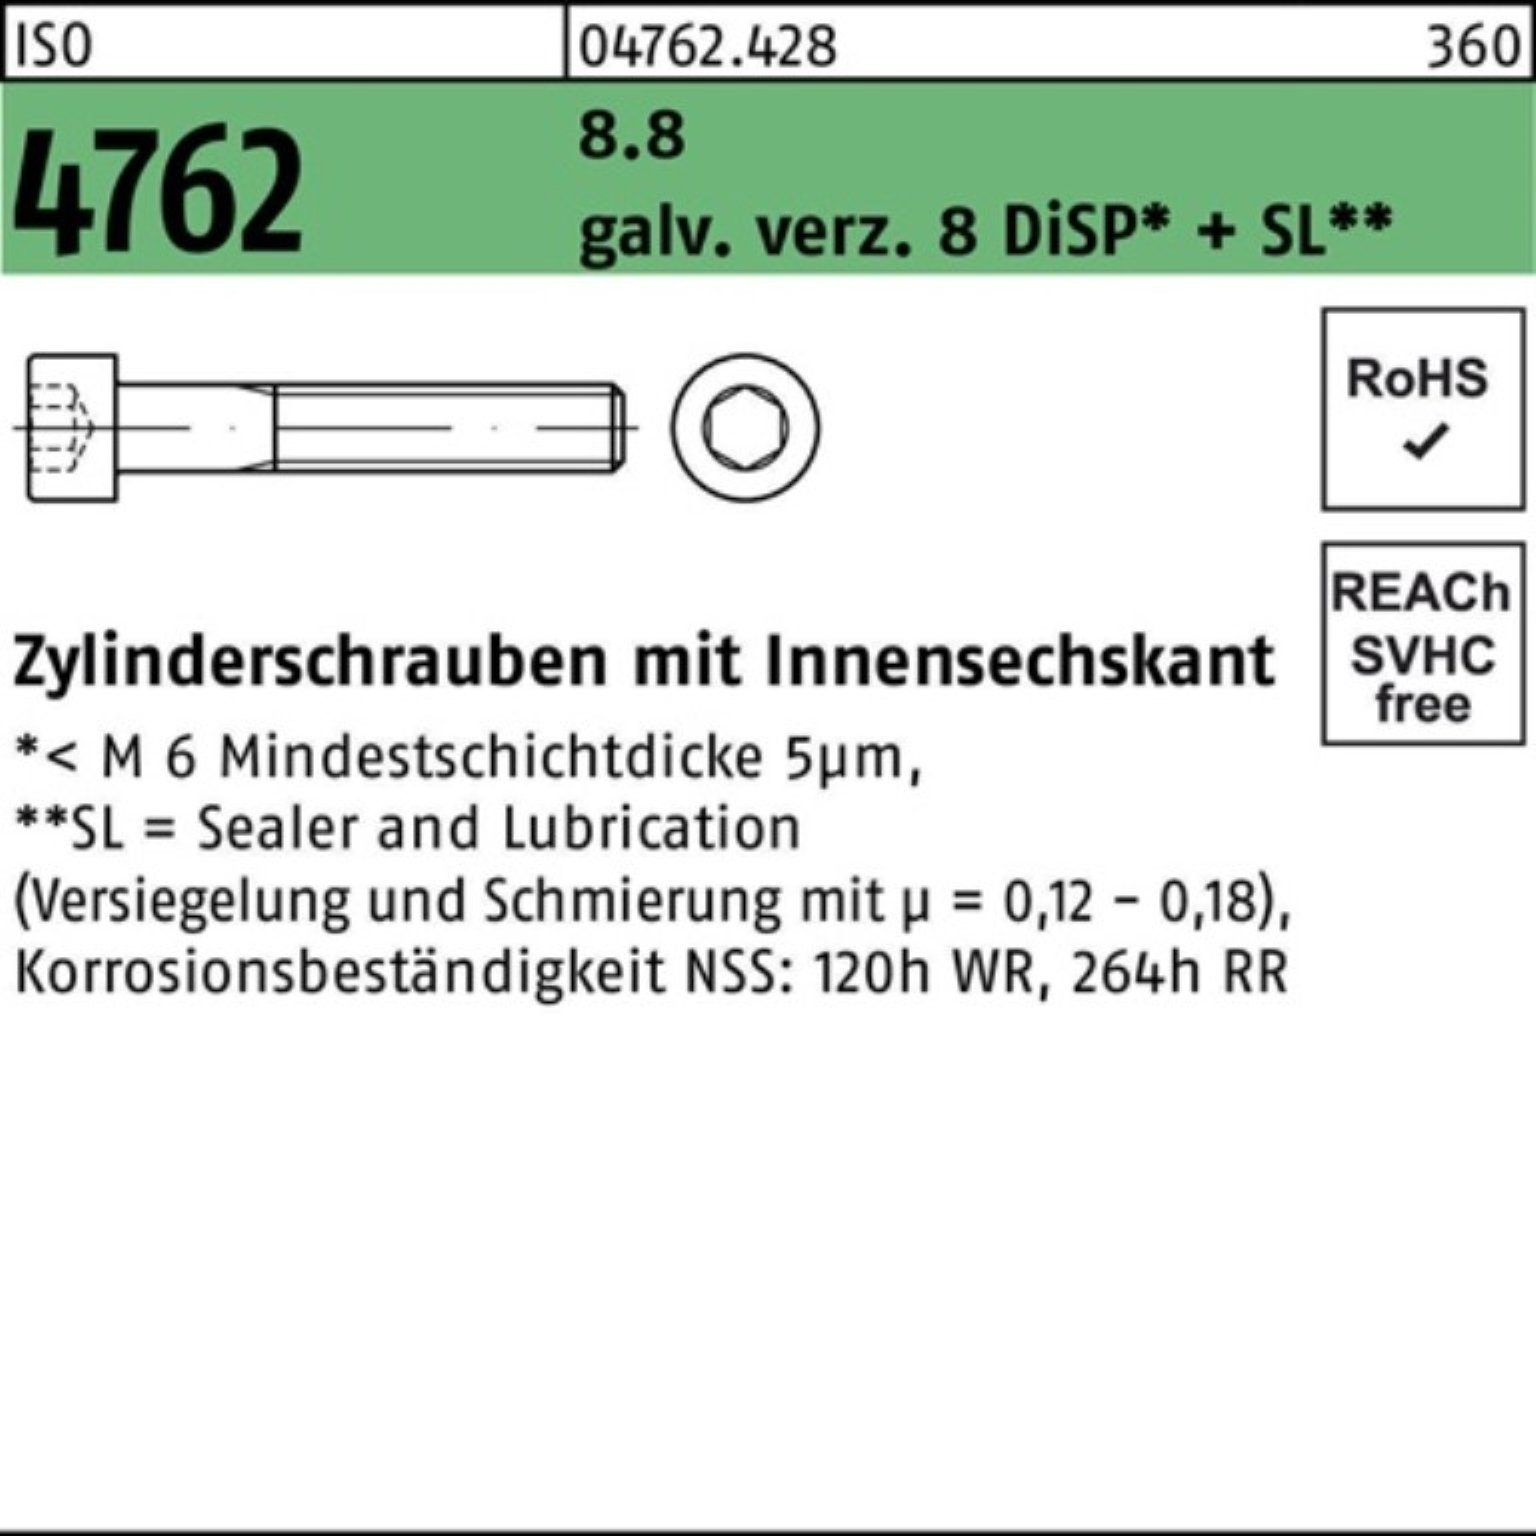 M4x6 500er Pack D Innen-6kt galv.verz. Zylinderschraube 8 Reyher ISO 8.8 Zylinderschraube 4762